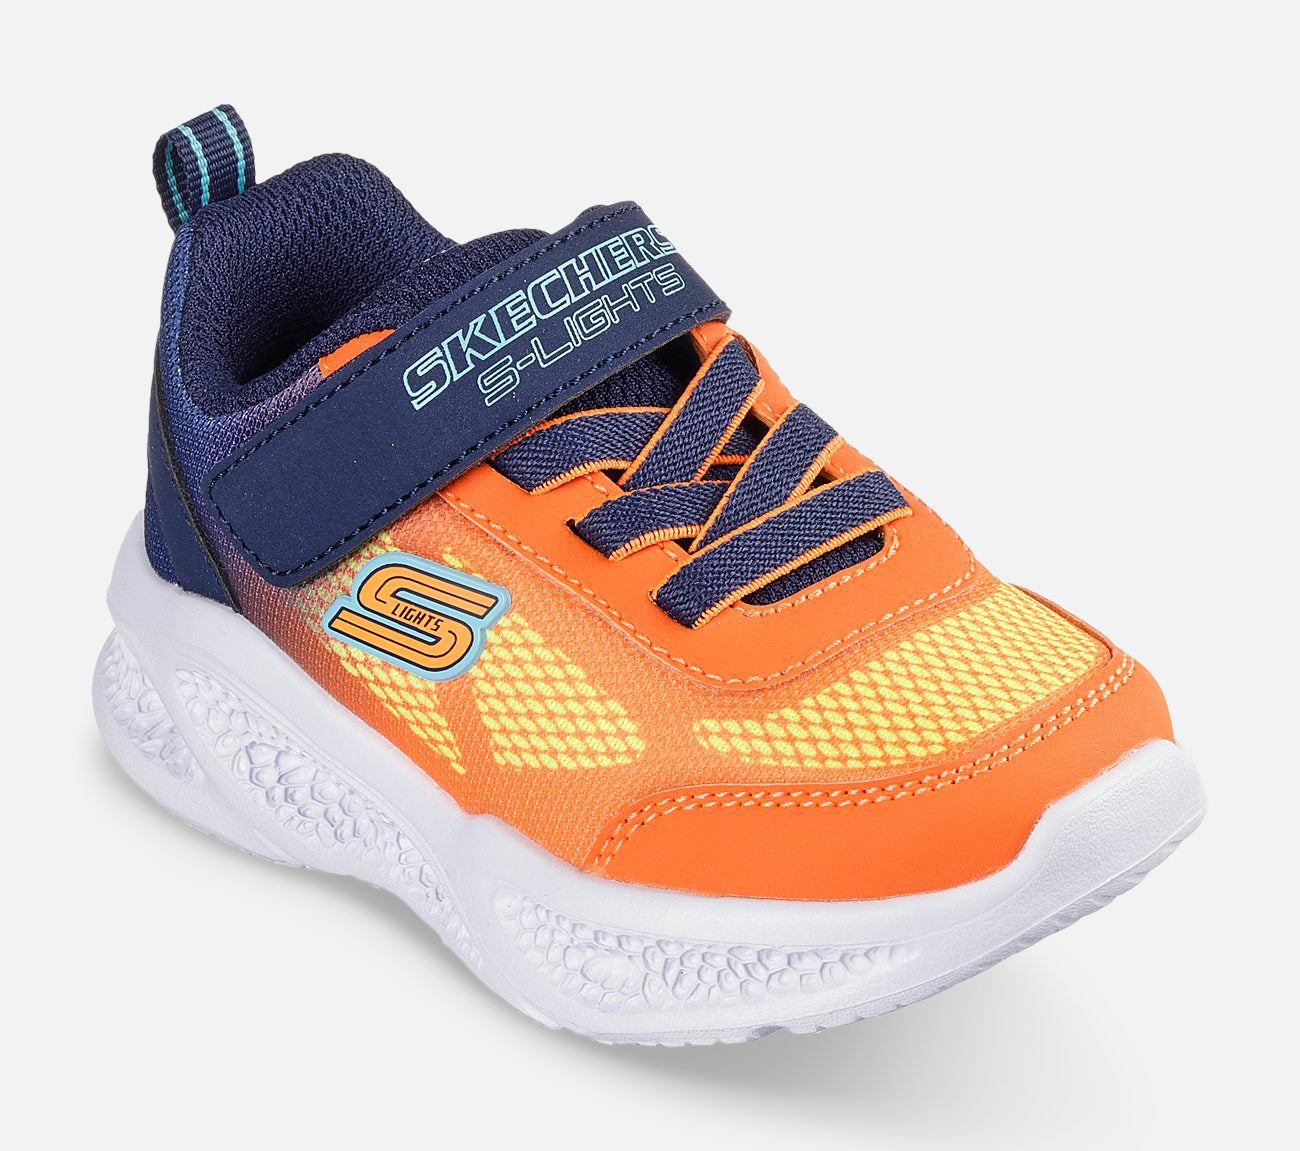 S-Lights: Meteor-Lights - Krendox Shoe Skechers